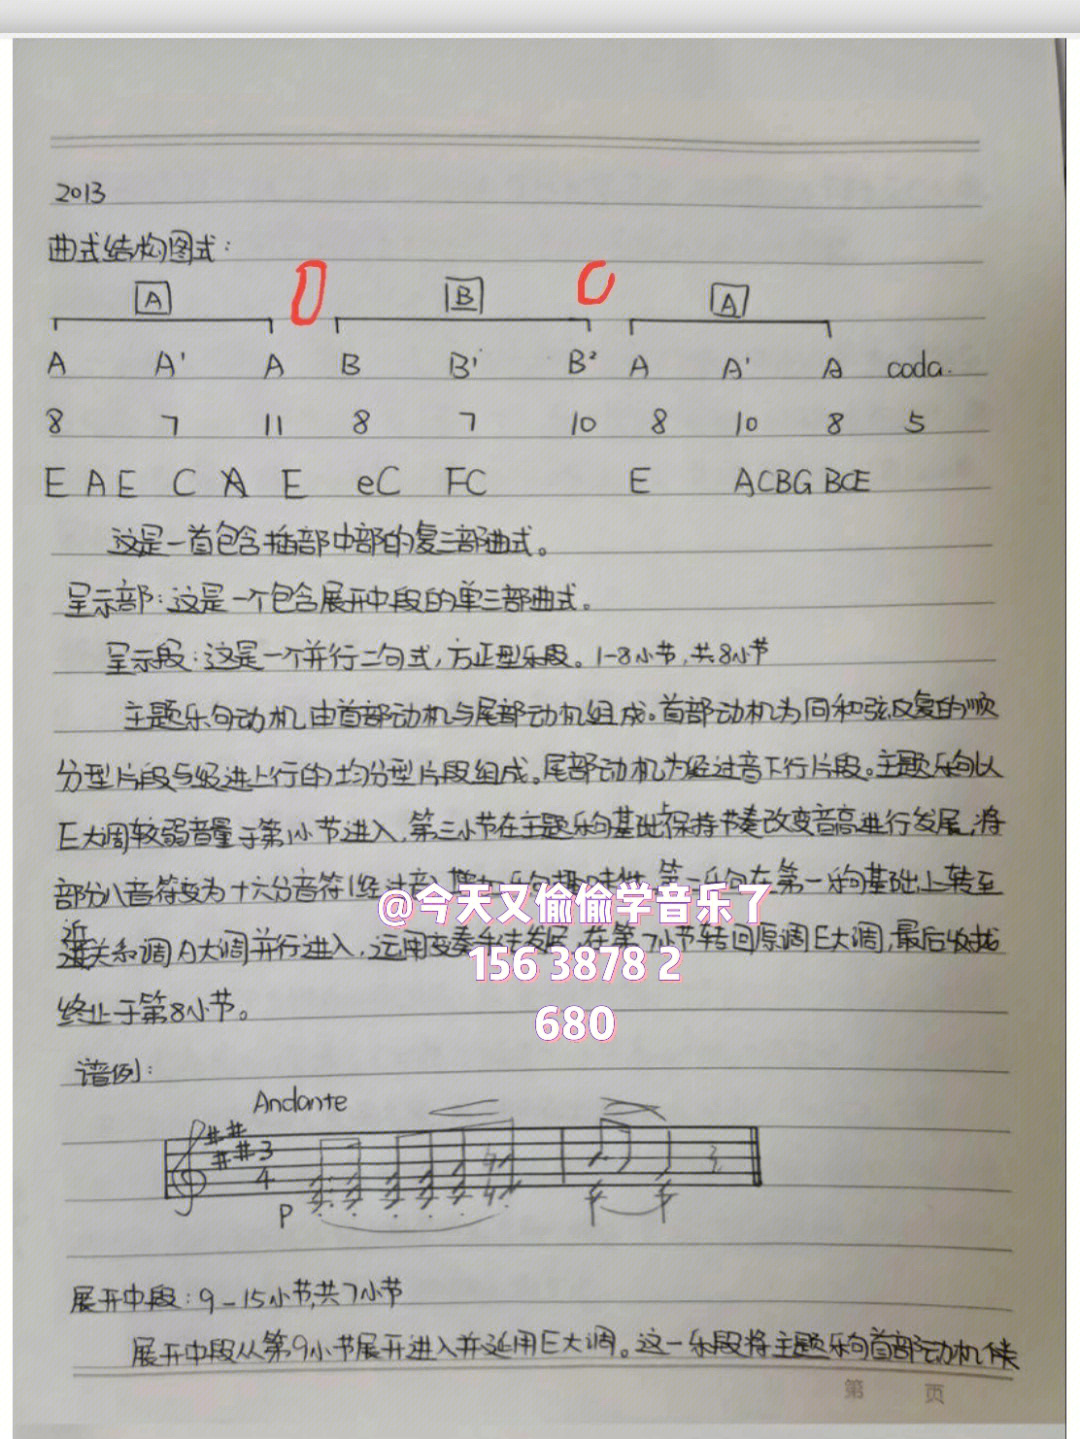 05音乐考研曲式分析作业优秀学生作业